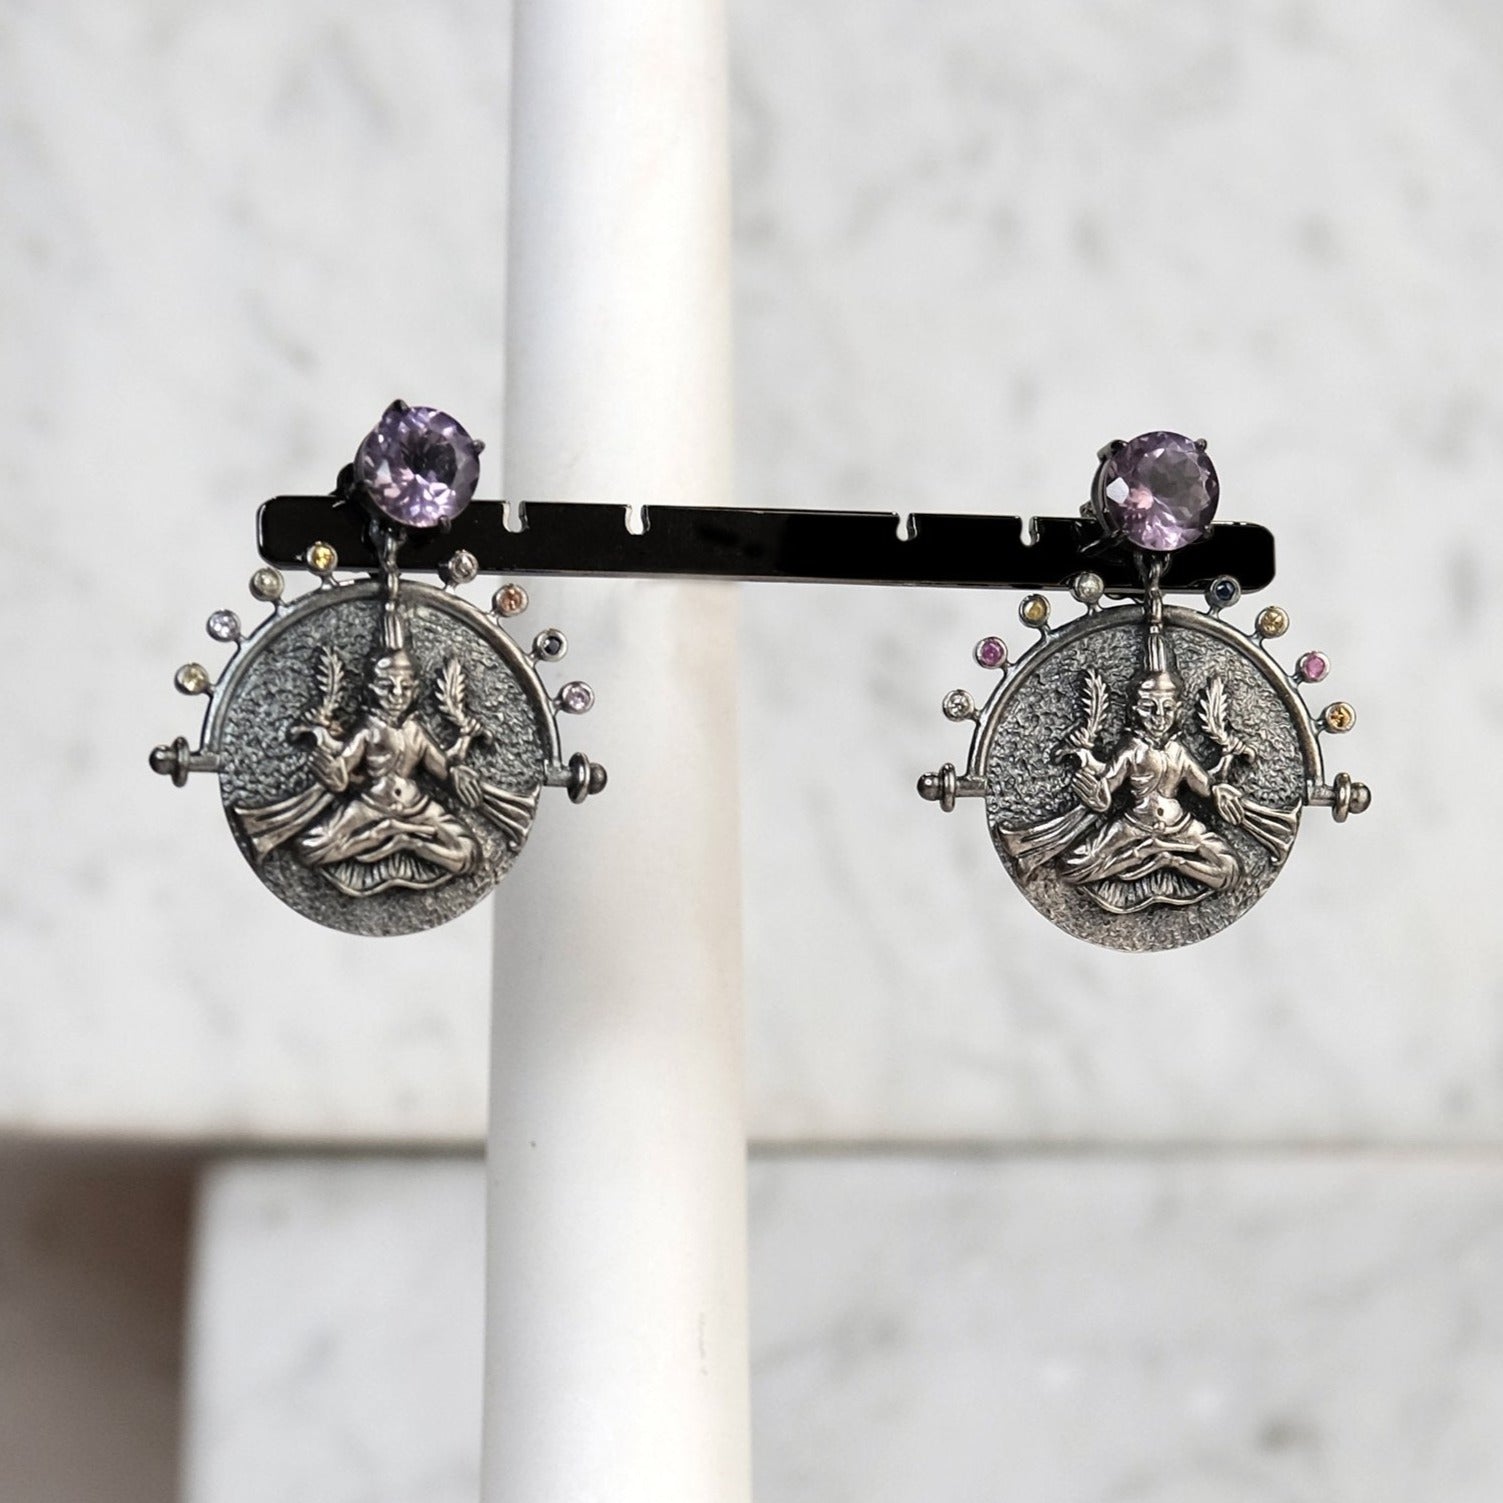 The Madstone Lakshmi earrings